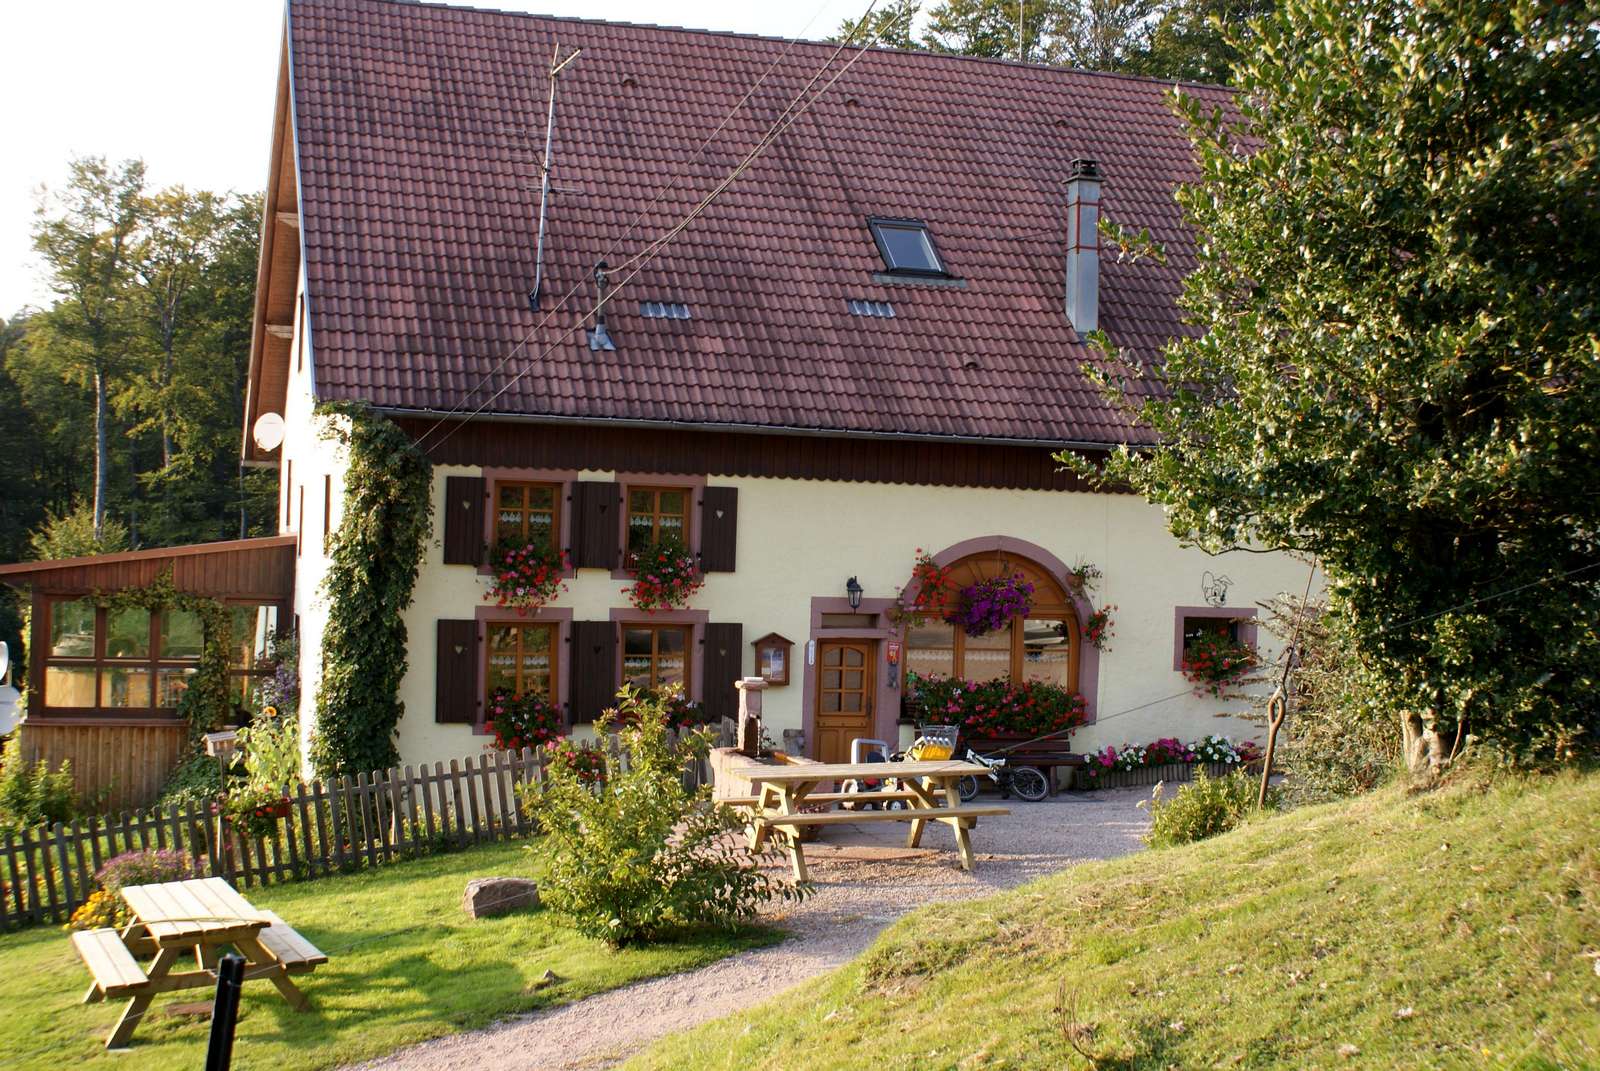 A farm inn